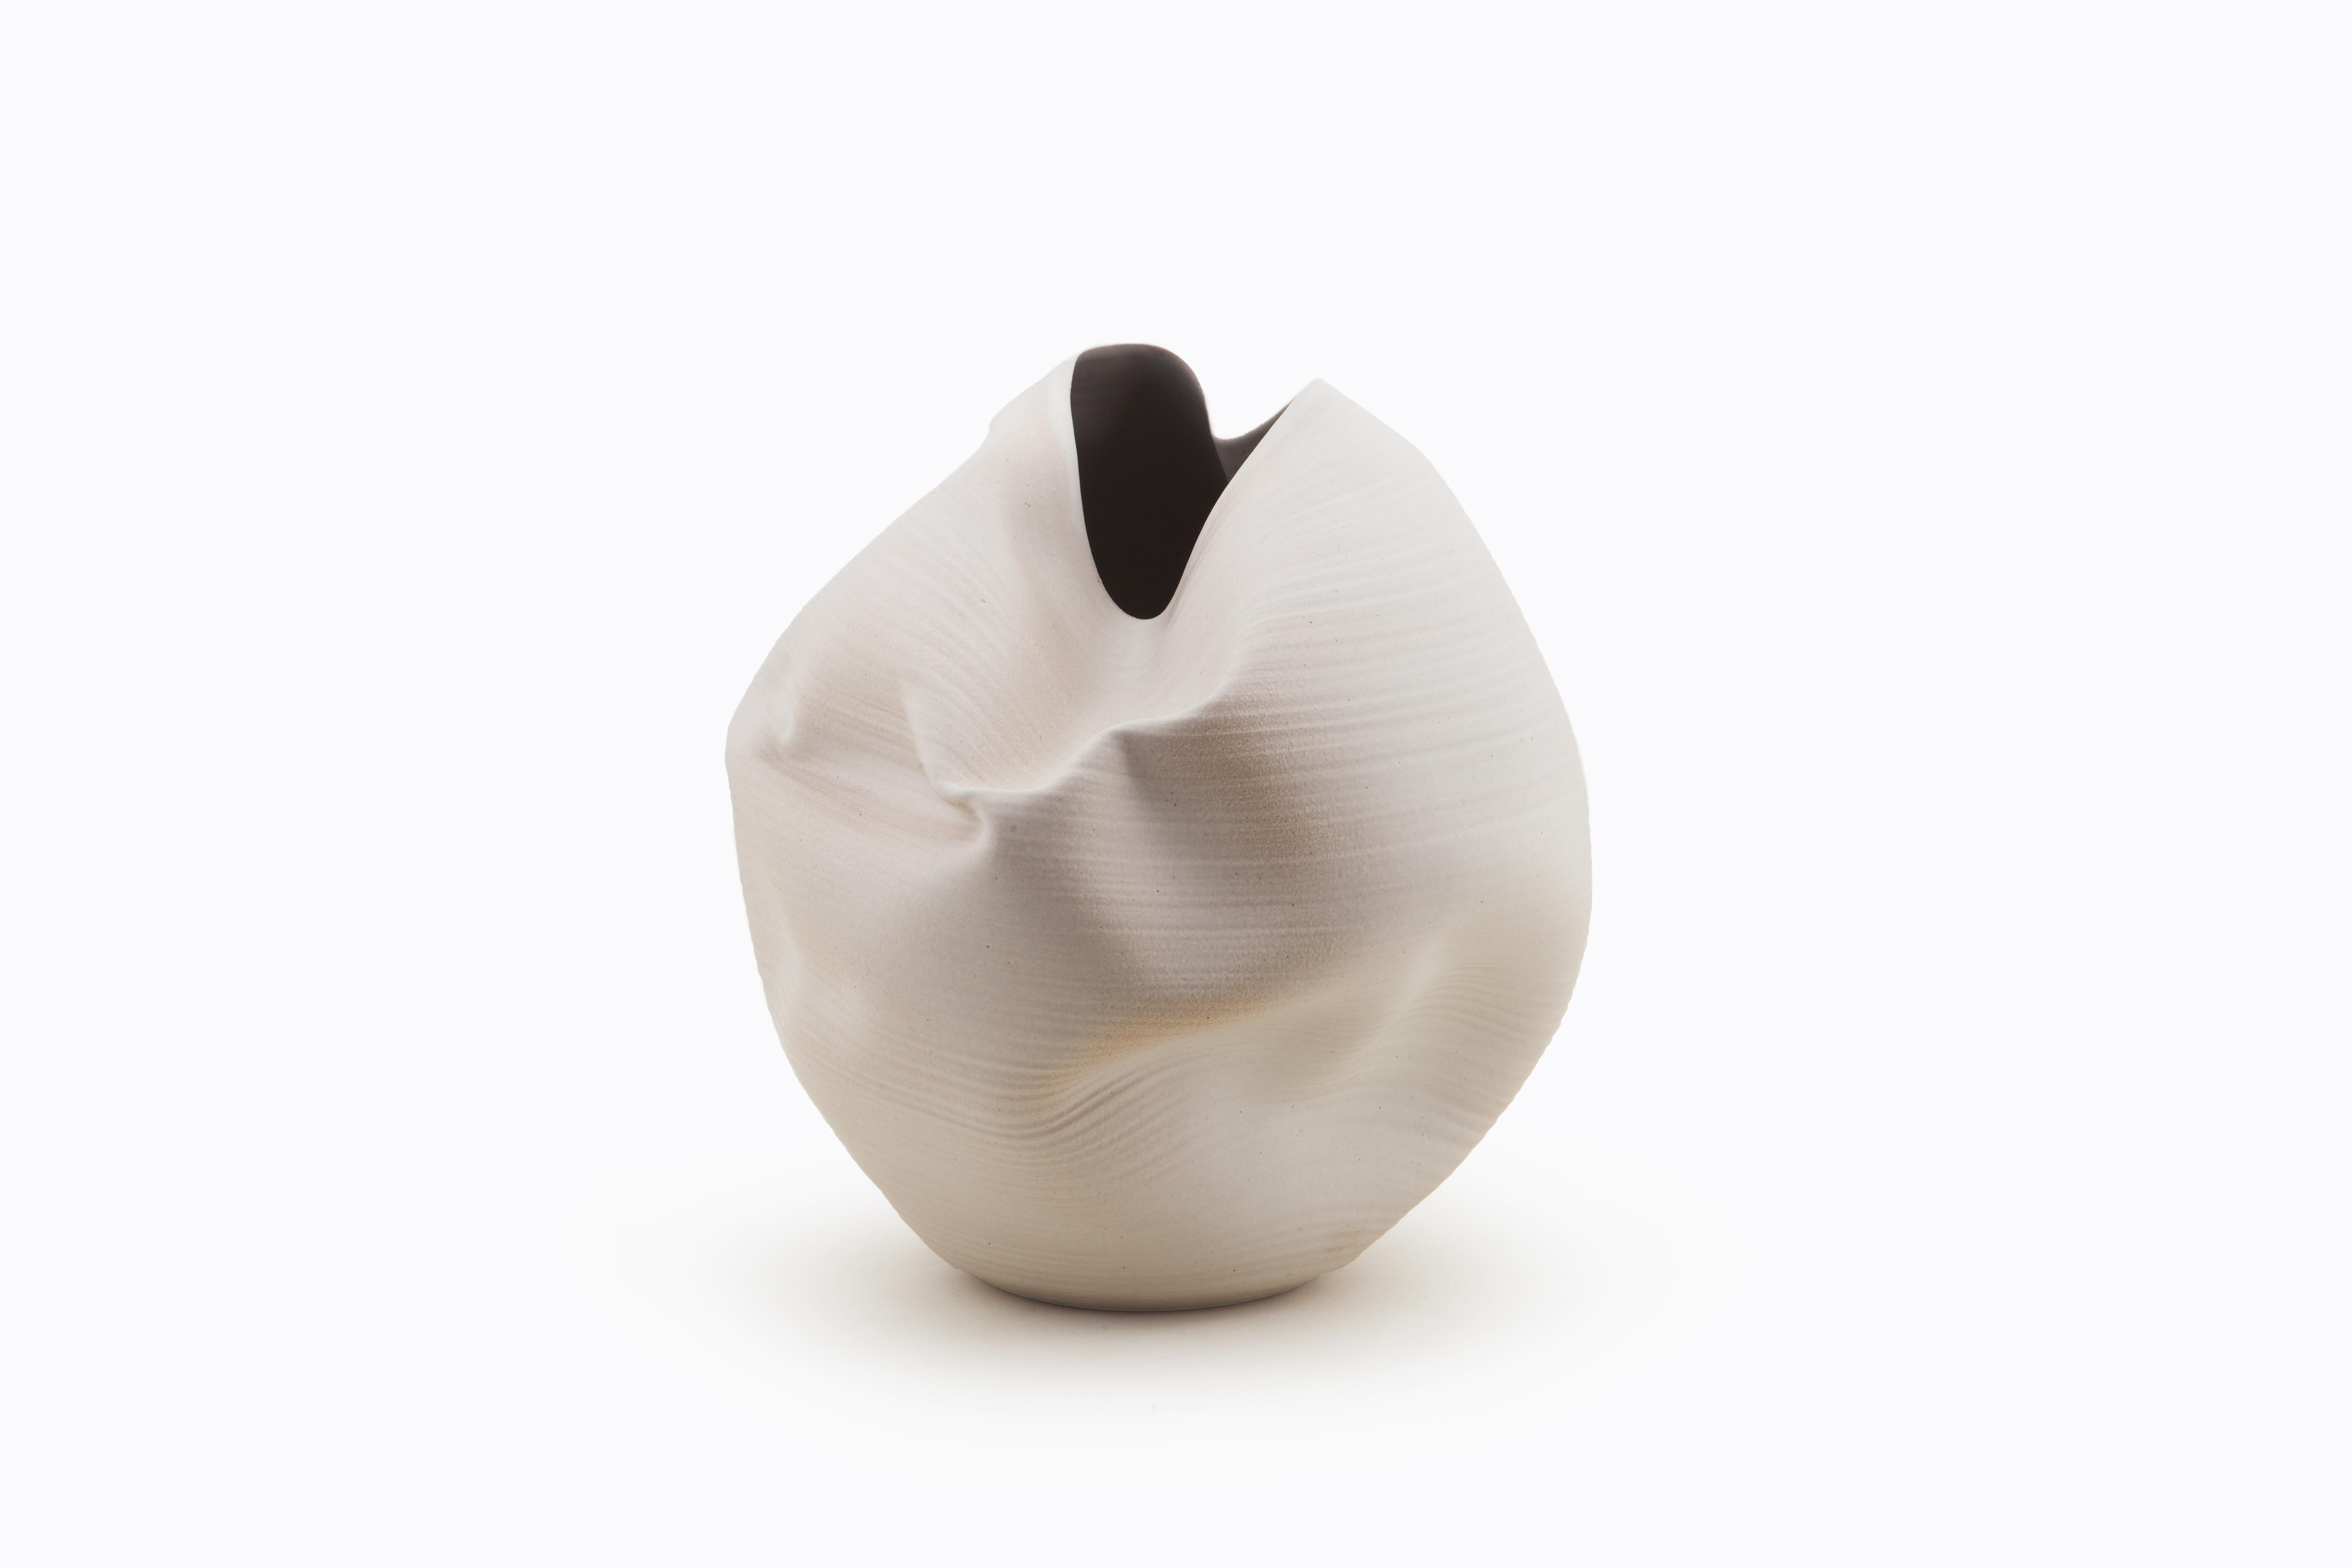 Glazed White Irregular Form, Vase, Interior Sculpture or Vessel, Objet D'Art